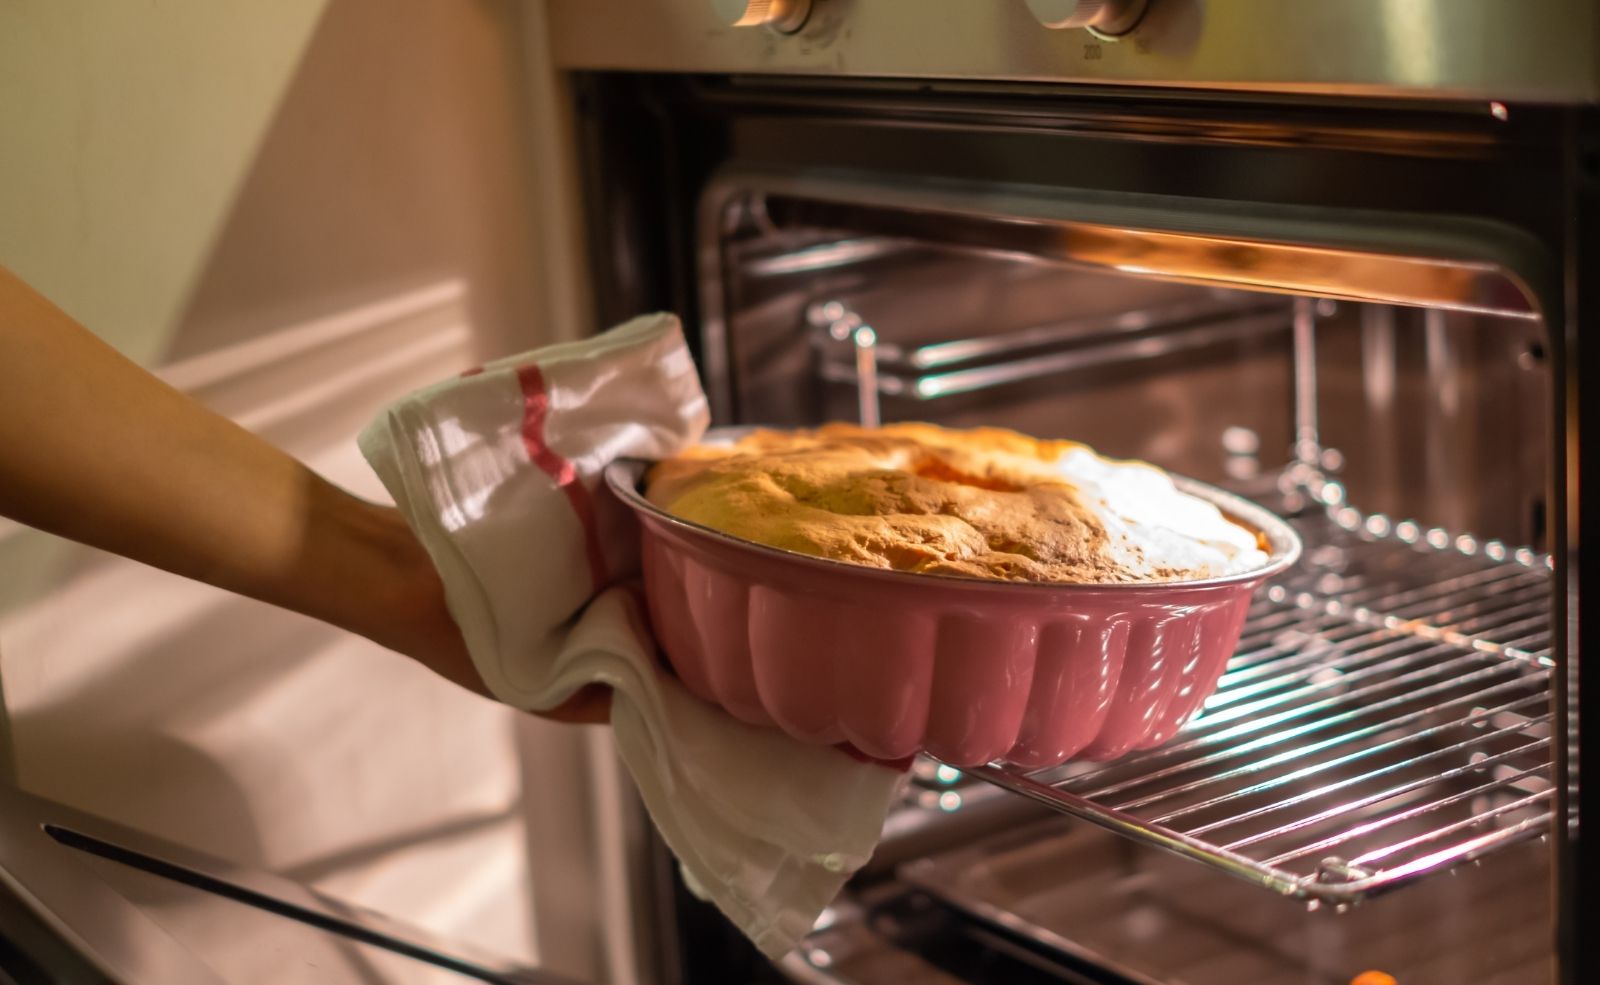 Рецепт теста в микроволновке. Baking Oven. Выпекание в духовке красители. Oven Baked. Духовка которая печет пироги и торта.